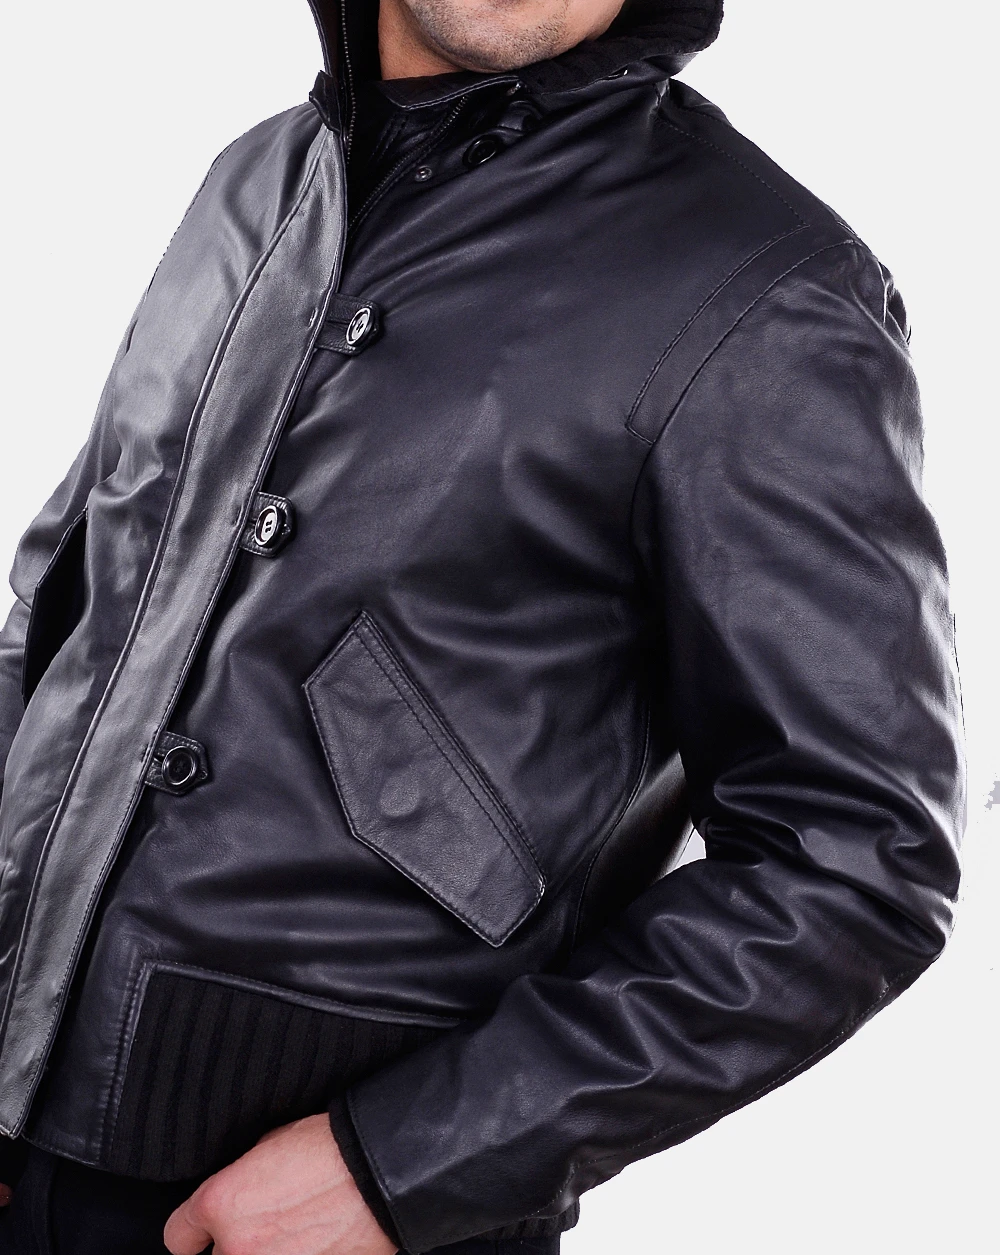 Elegant and Stylish leather jacket